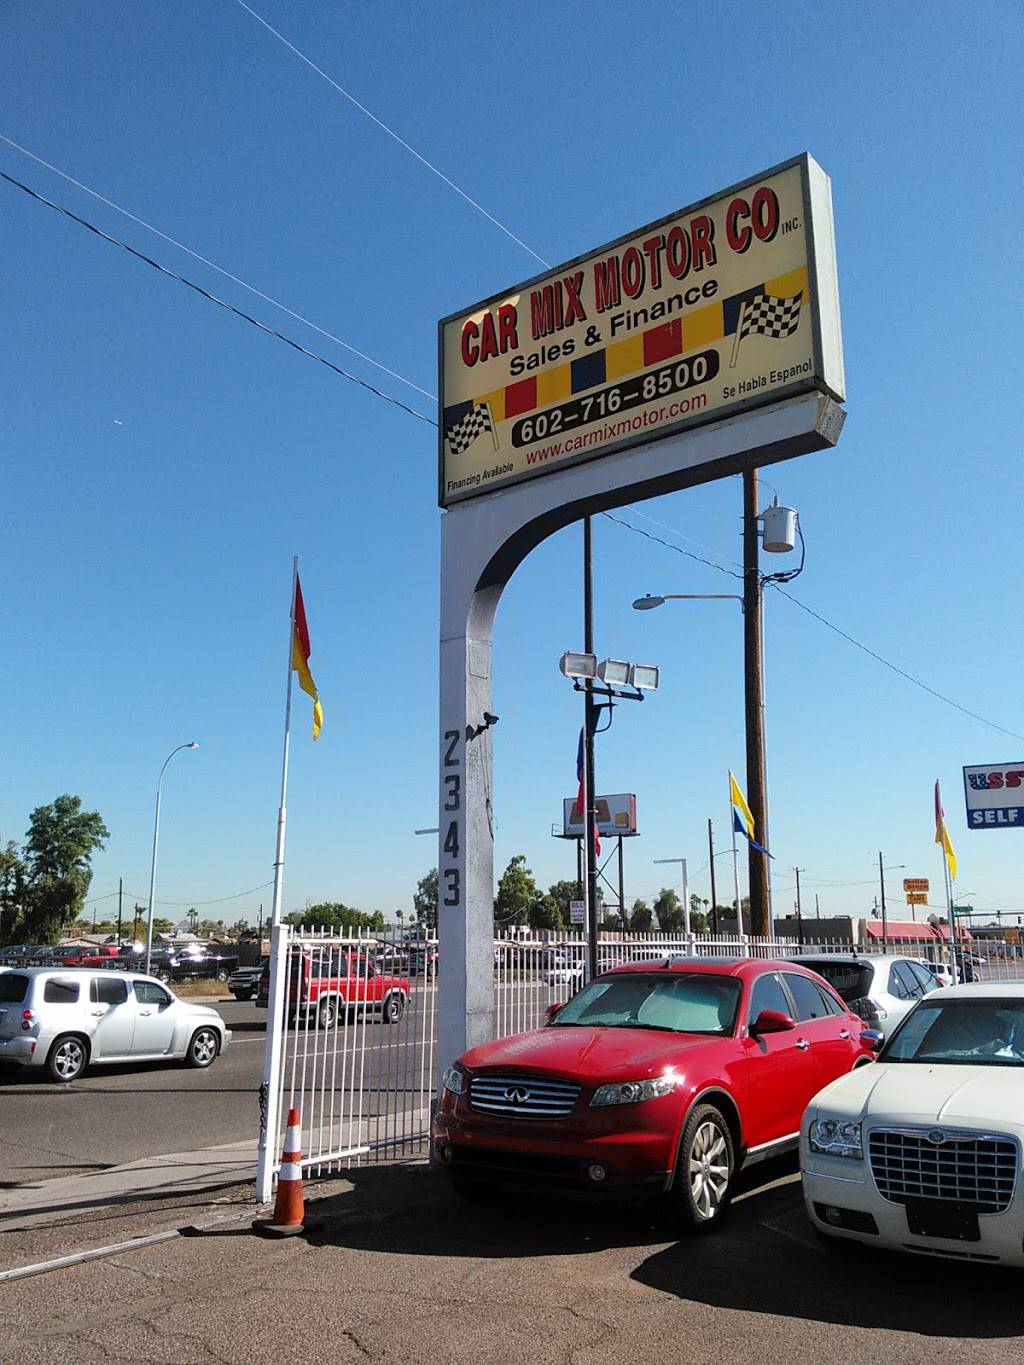 Car Mix Motor Co. | 2343 W Indian School Rd, Phoenix, AZ 85015 | Phone: (602) 716-8500